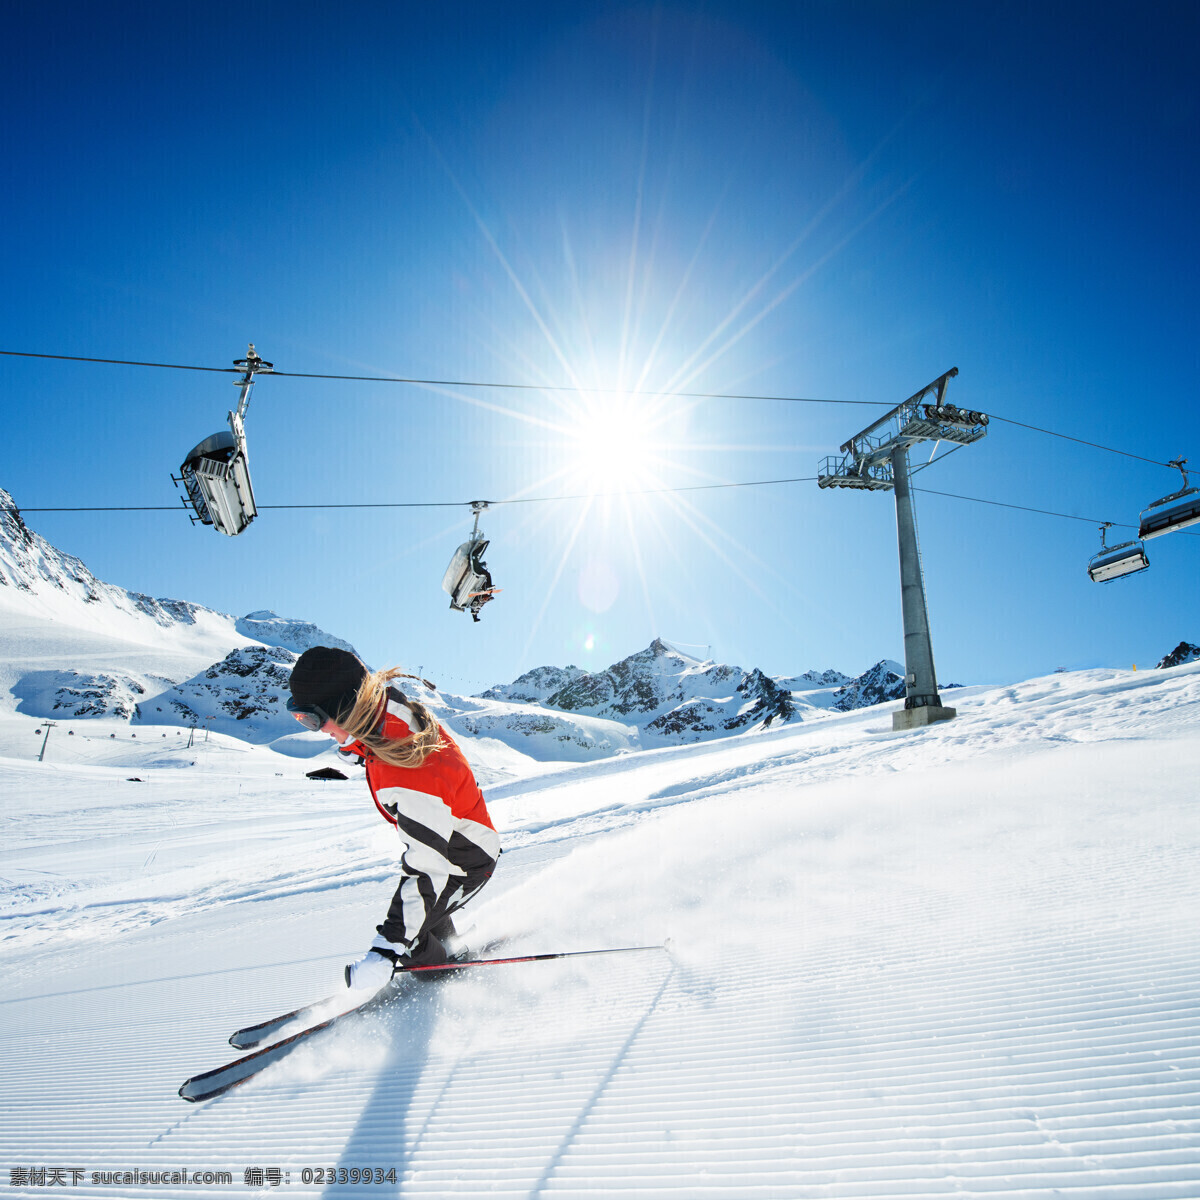 缆车 滑雪 运动员 高山 雪山 运动 雪地 雪花 滑雪图片 生活百科